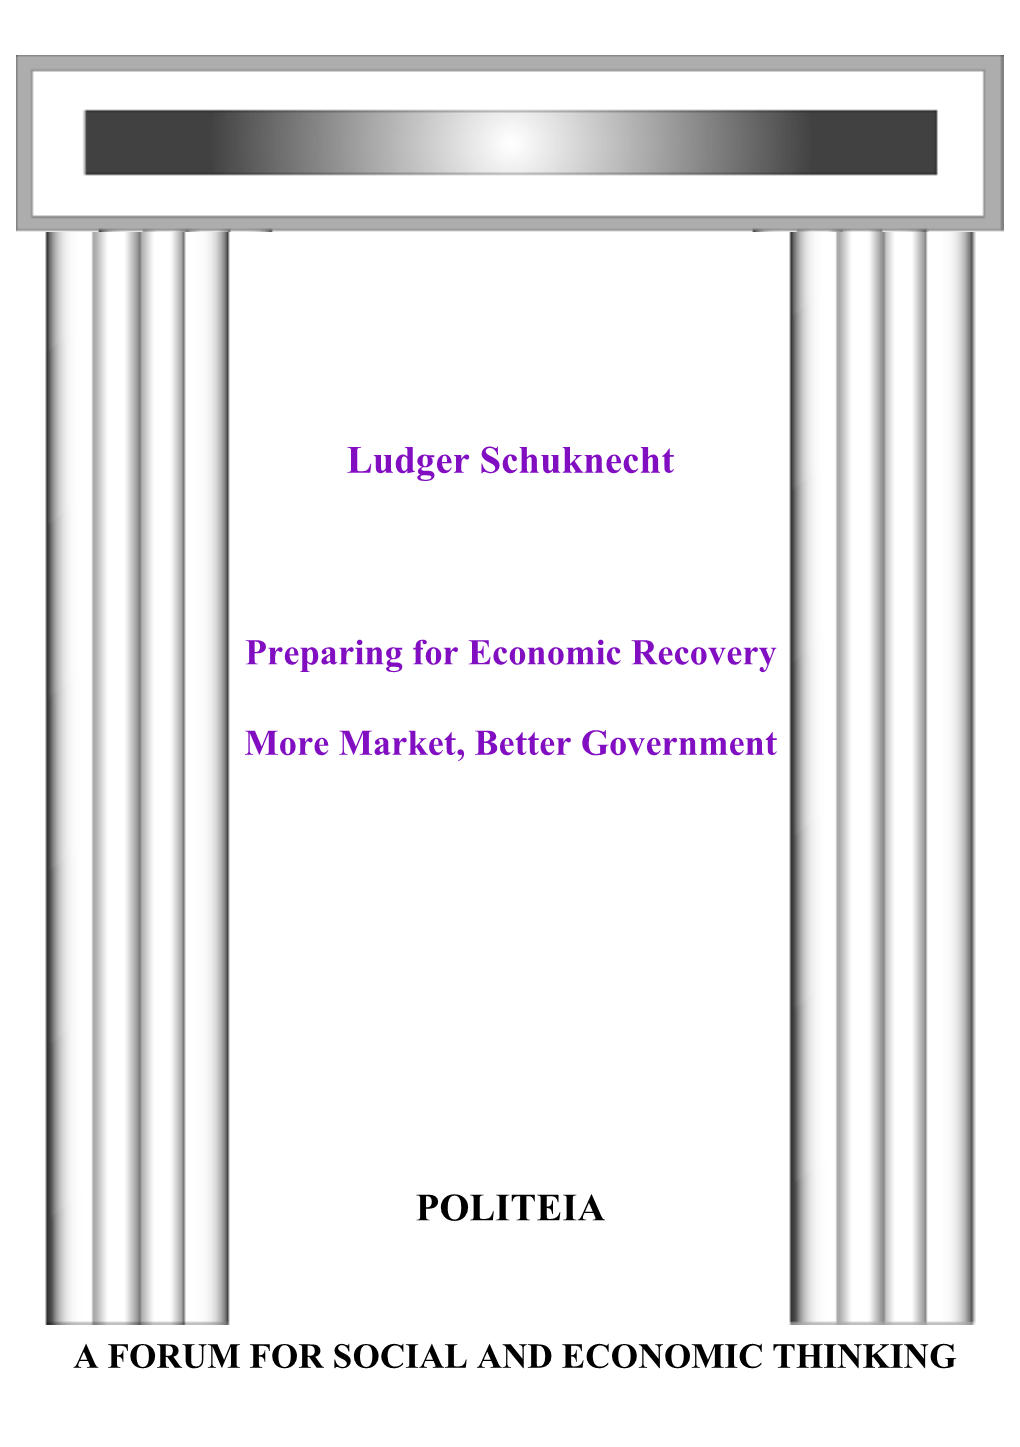 Ludger Schuknecht POLITEIA